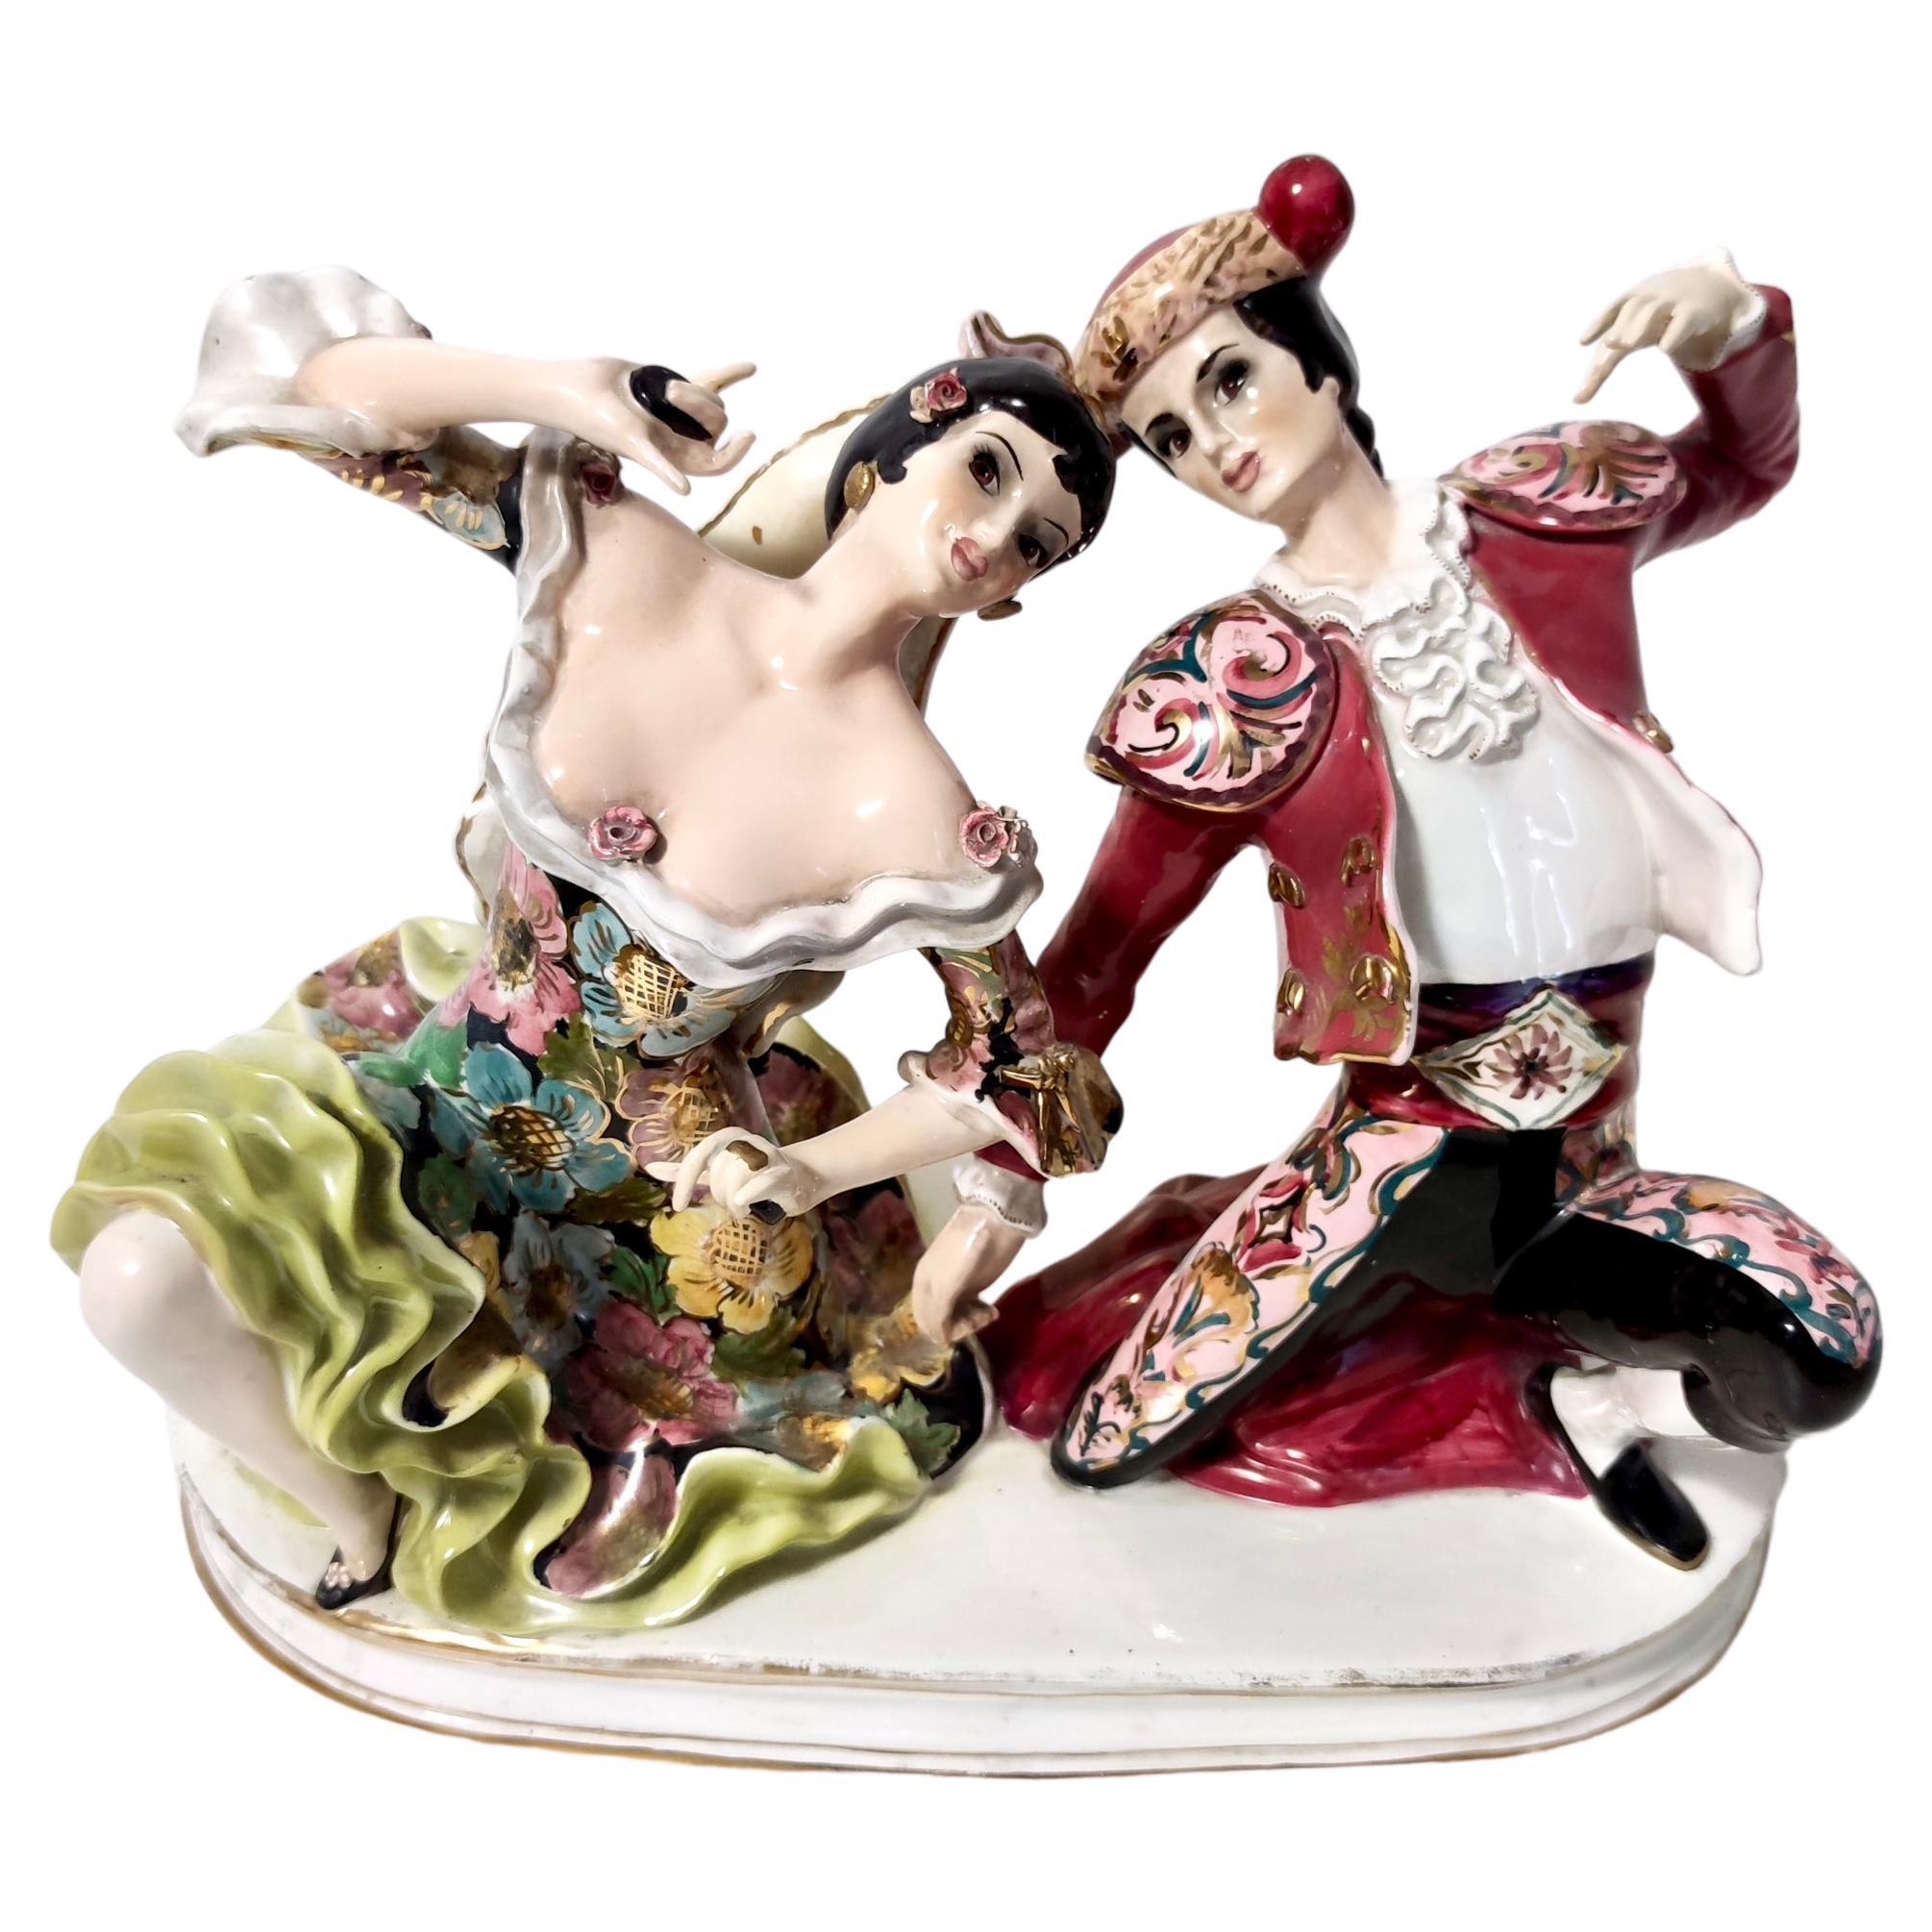 Vintage-Torero- und Flamenco-Tänzerfiguren aus Keramik von Giovanni Girardi, Italien